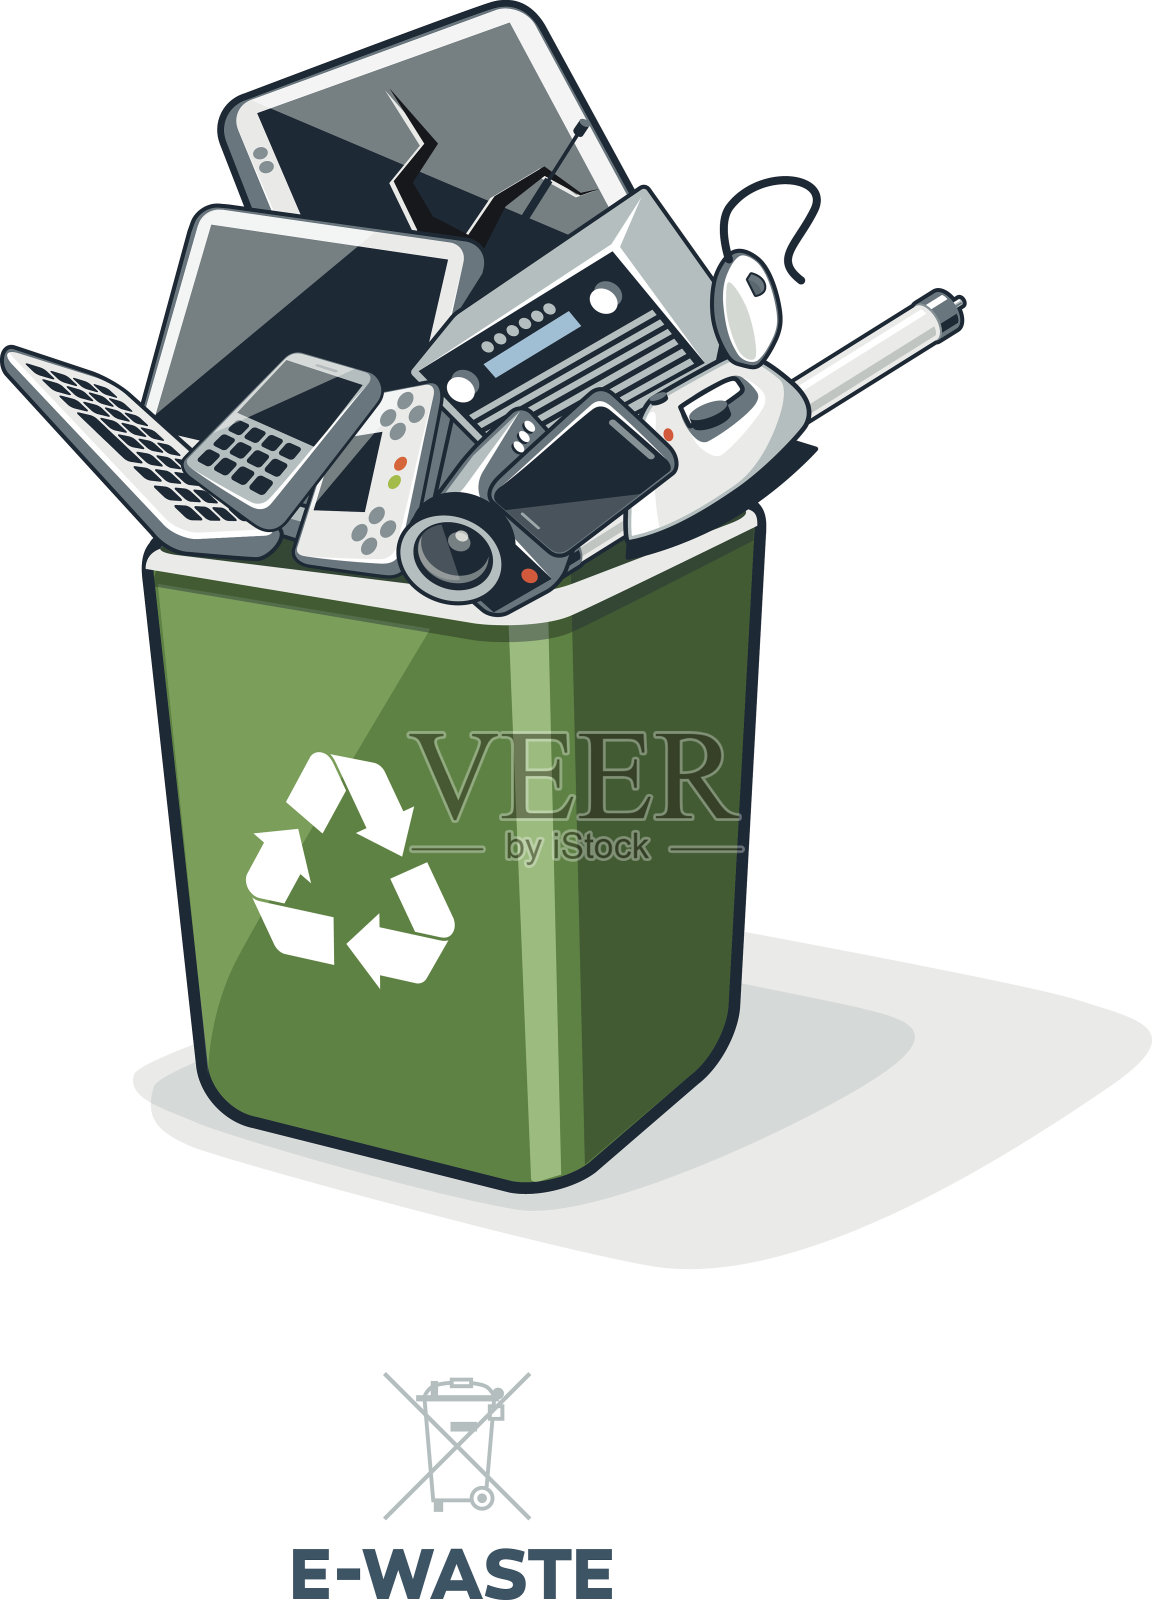 电子废物回收箱插画图片素材